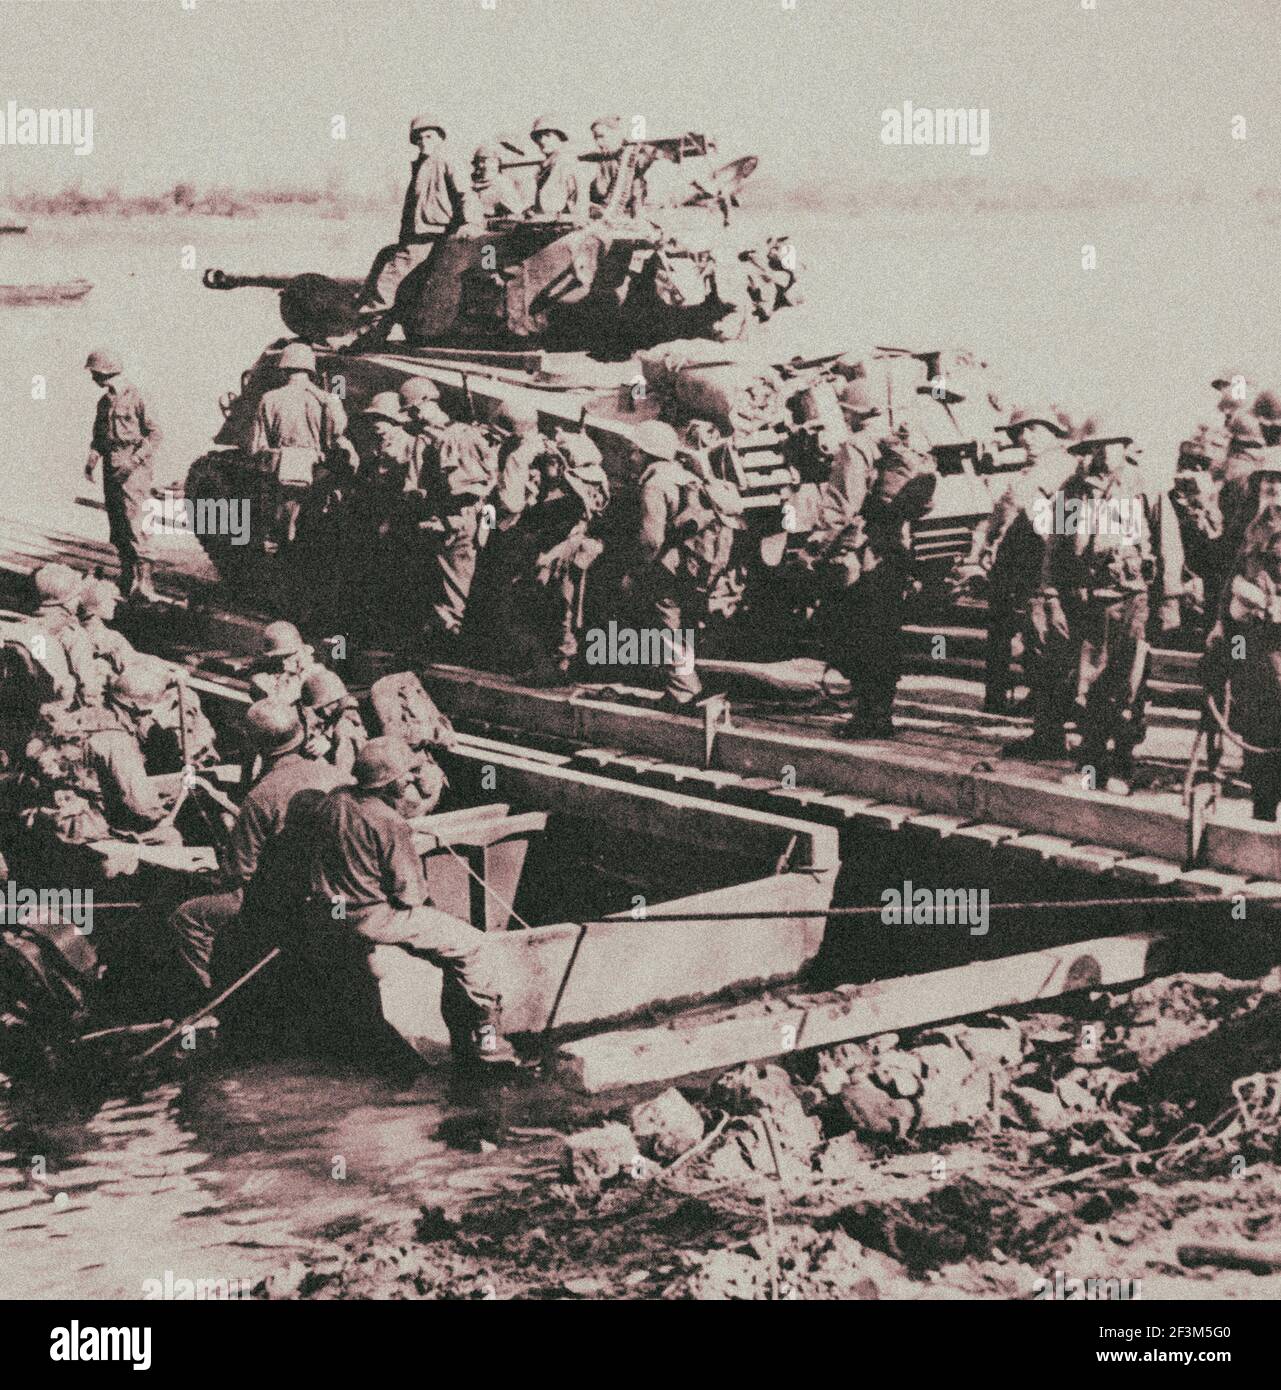 Archivfoto der 3. US-Armee-Truppen überqueren zum Ostufer des Rheins, 23. März 1945 Stockfoto